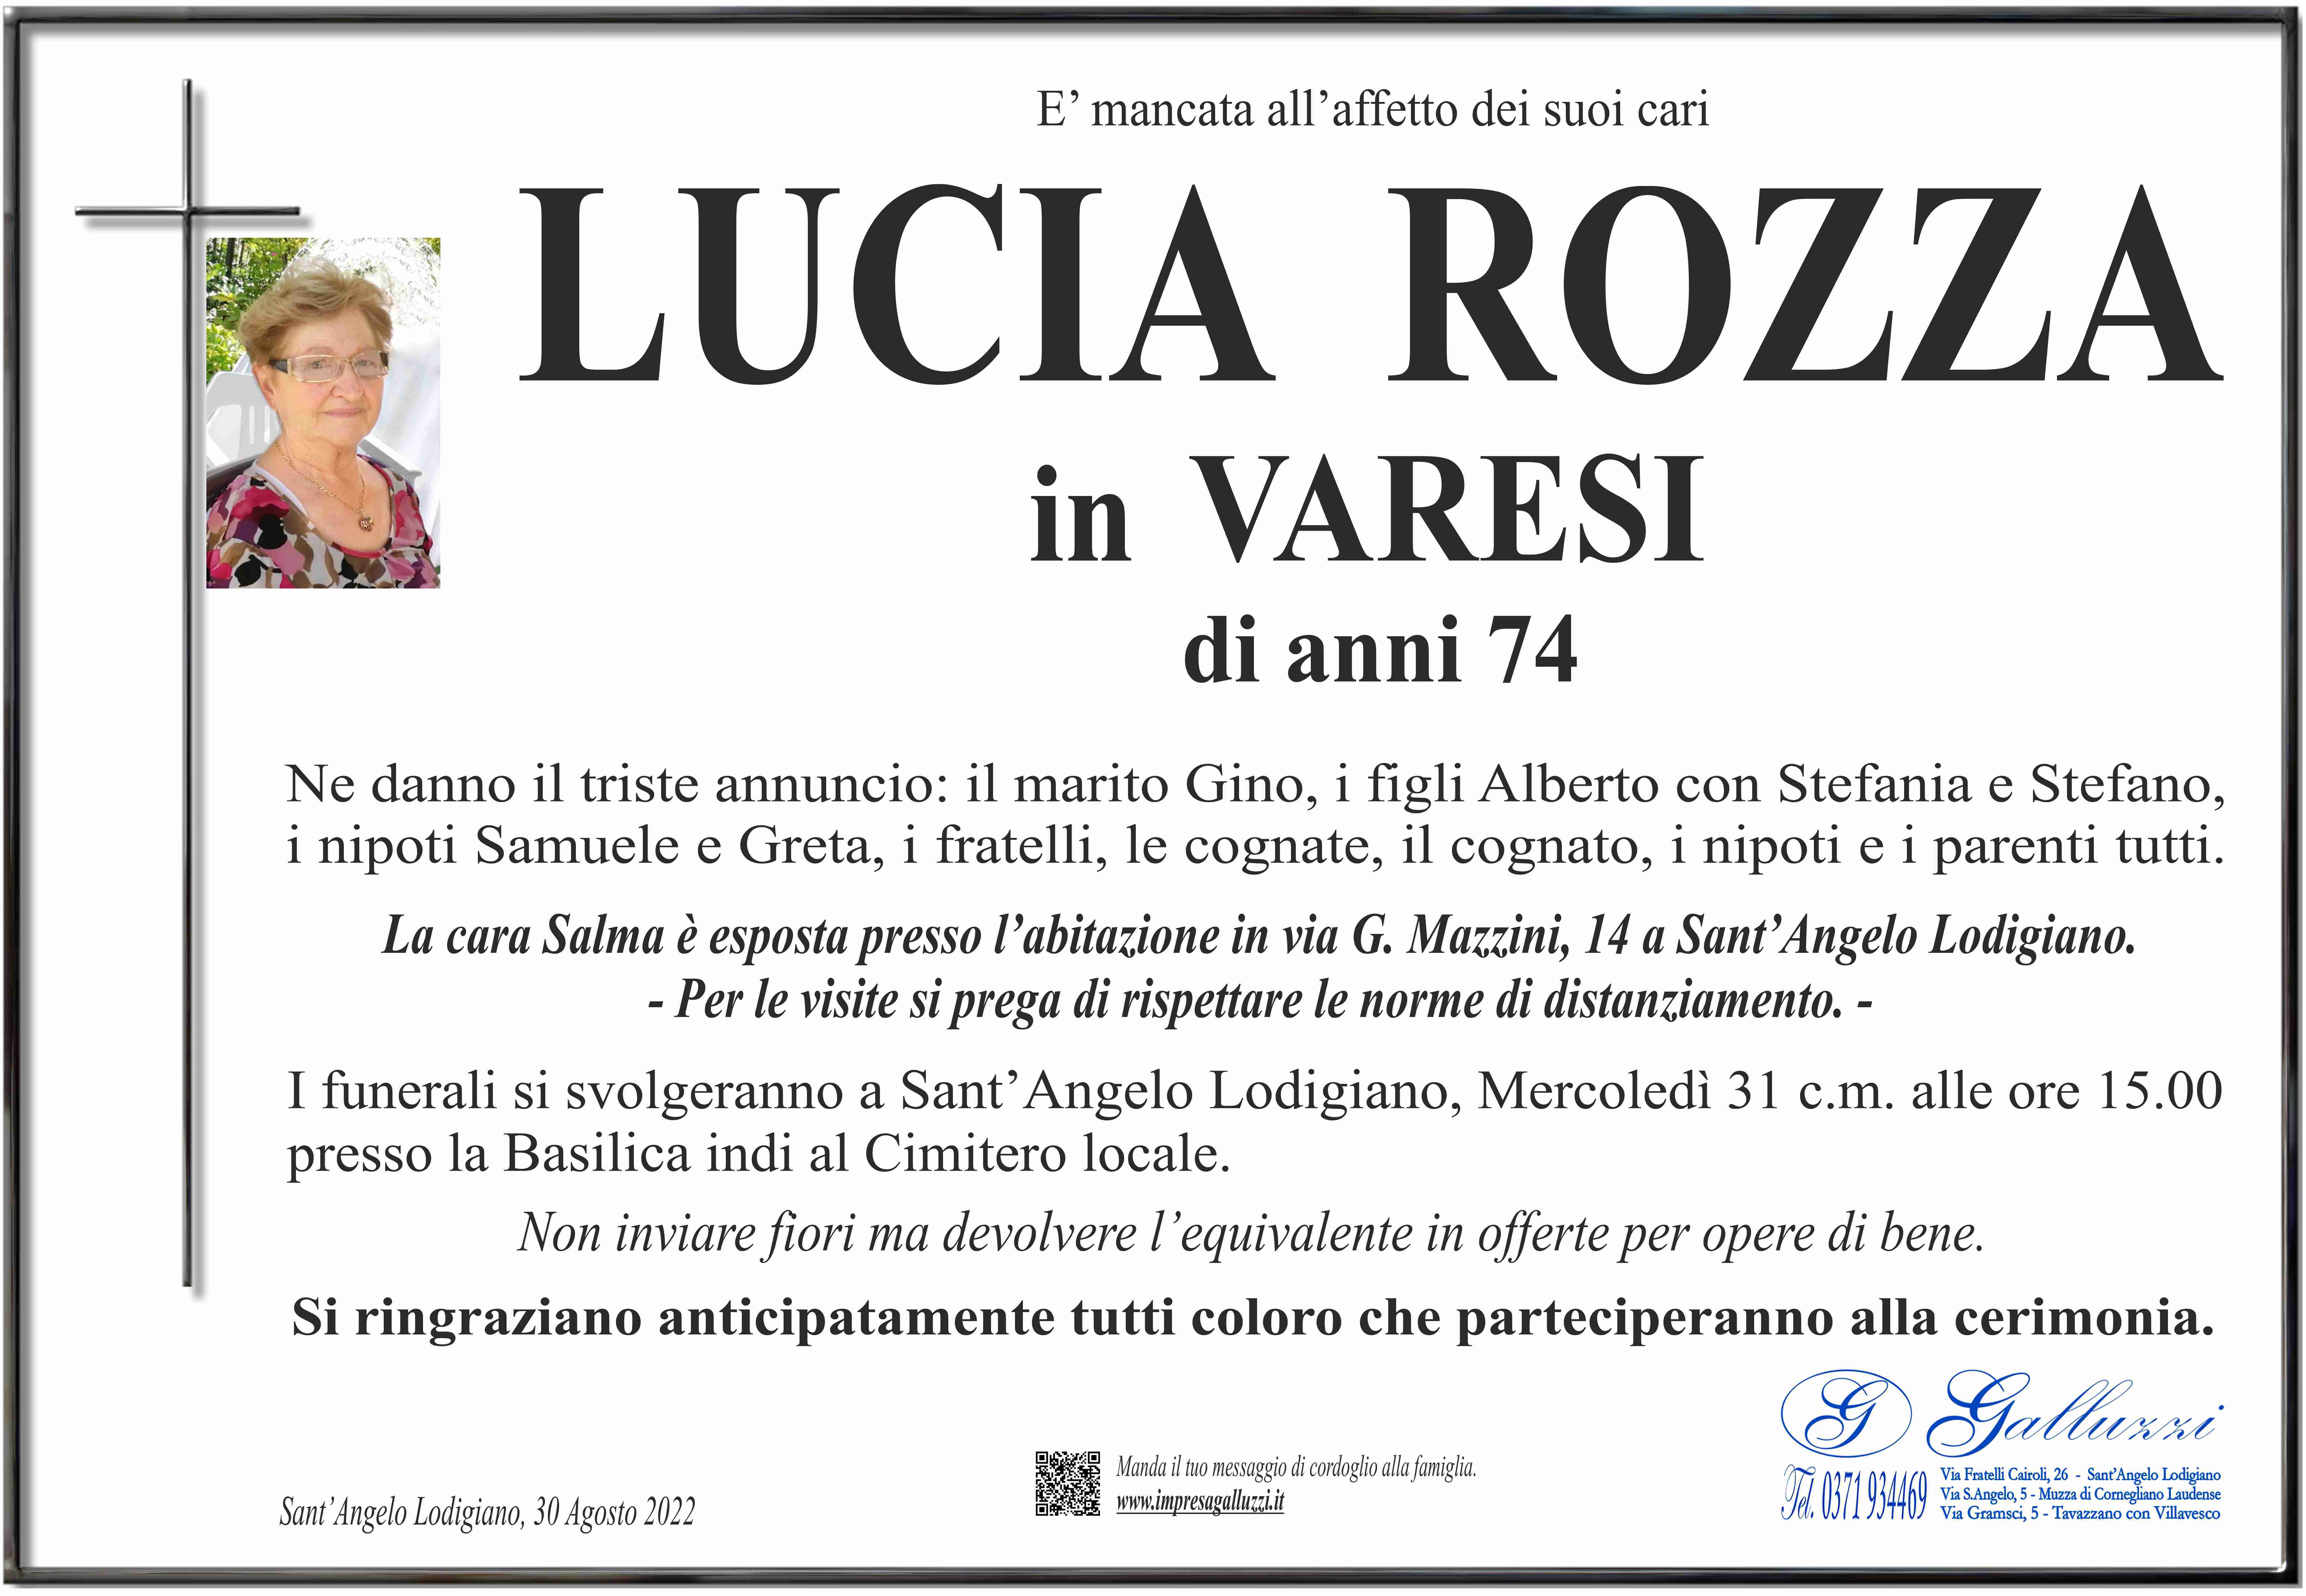 Lucia Rozza